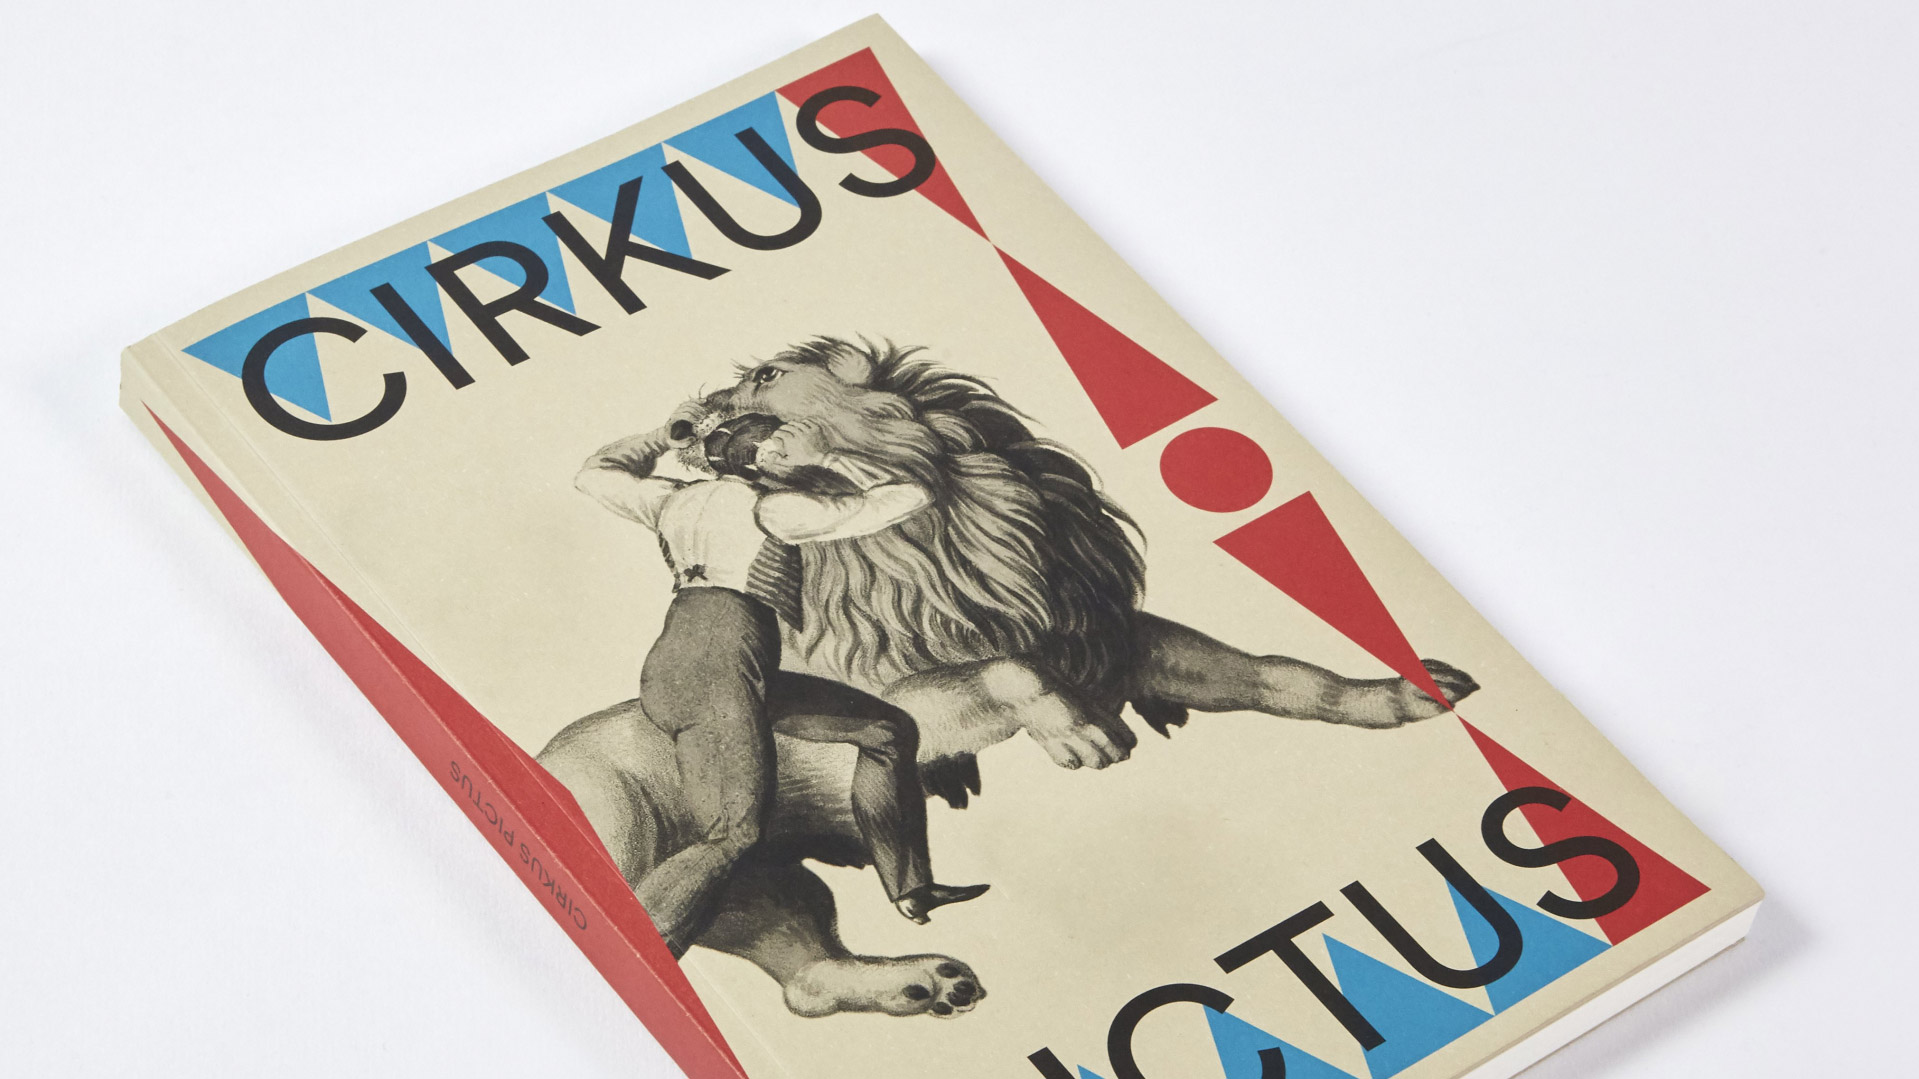 Cirkus pictus – Wondrous Beauty and a Miserable Existence